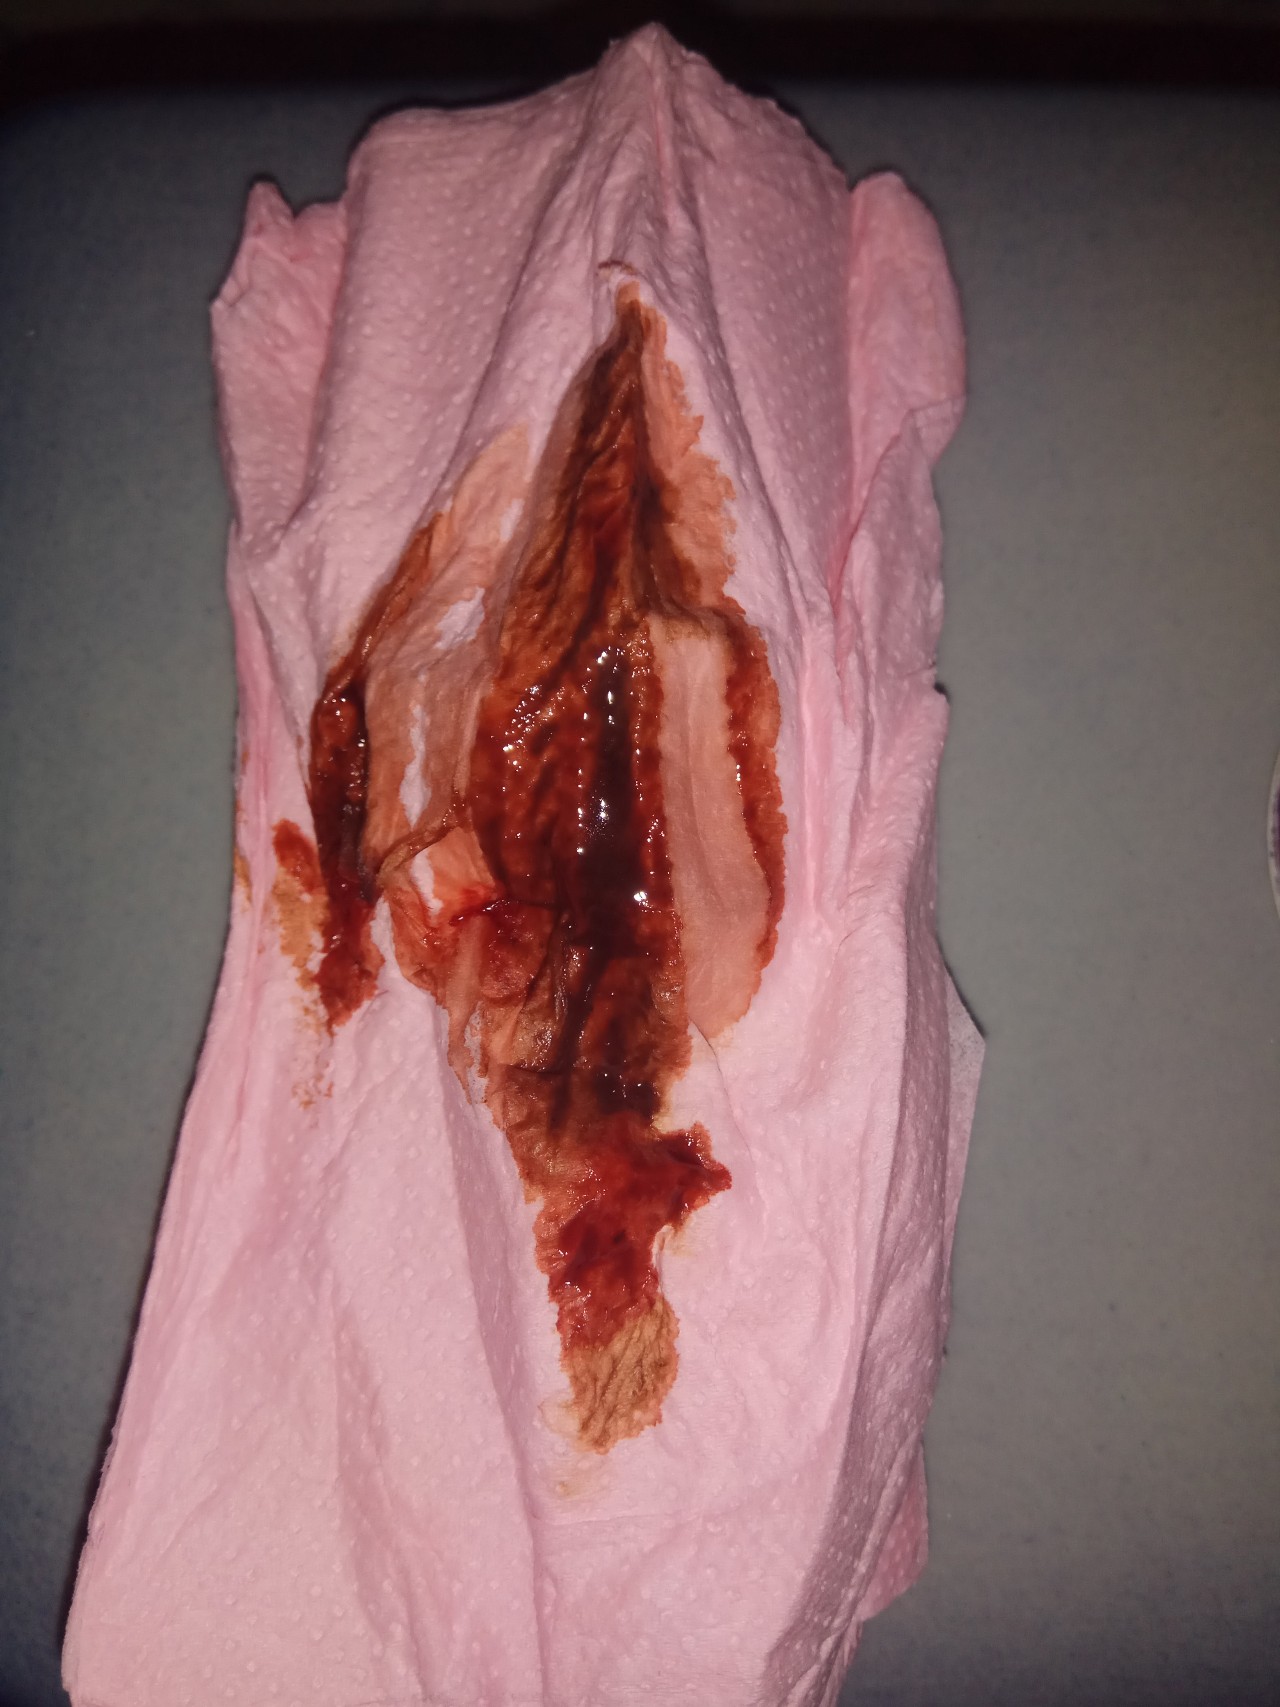 кровяные выделения во время оргазма фото 111